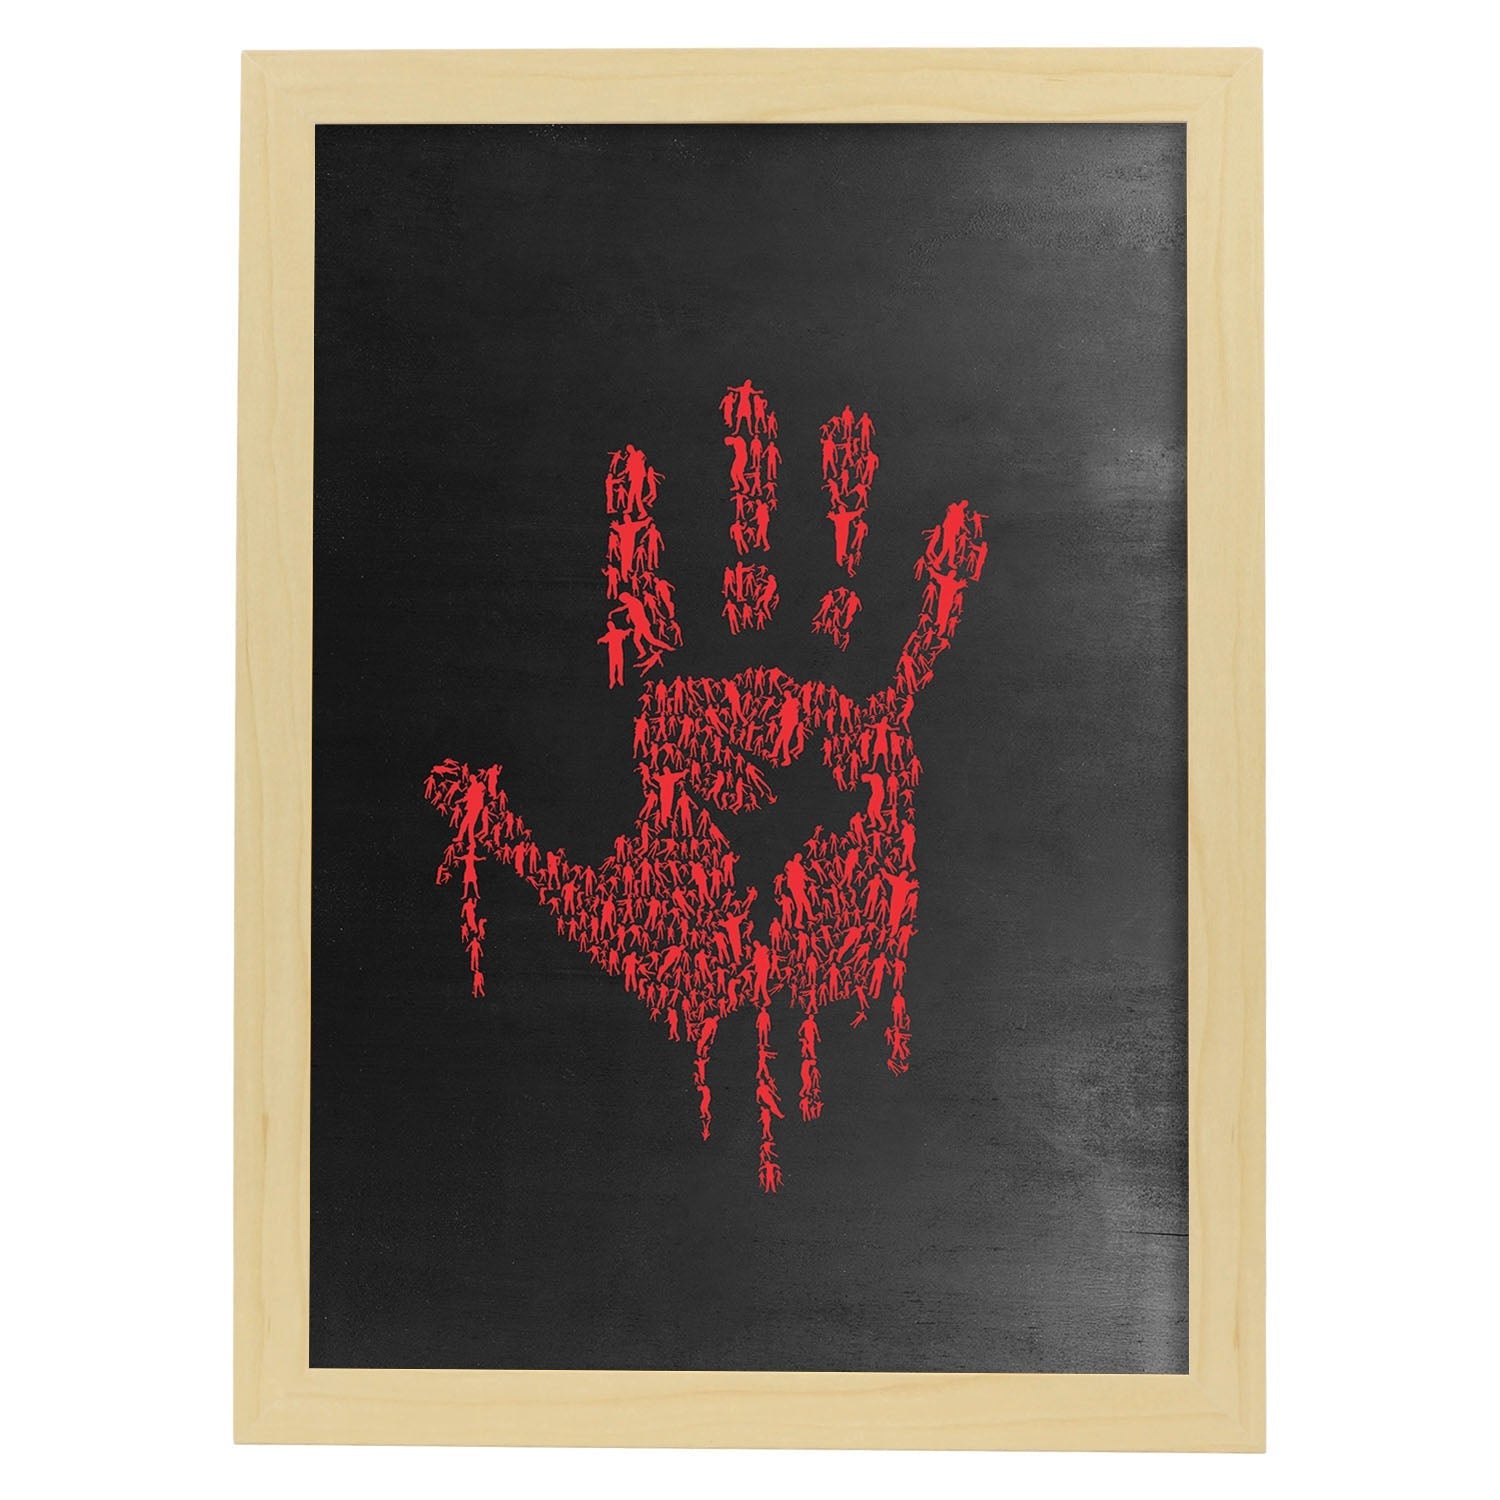 Lámina mano roja de La noche de los zoombies en Poster con fondo negro estilo pizarra. Papel 250 gr.-Artwork-Nacnic-A4-Marco Madera clara-Nacnic Estudio SL